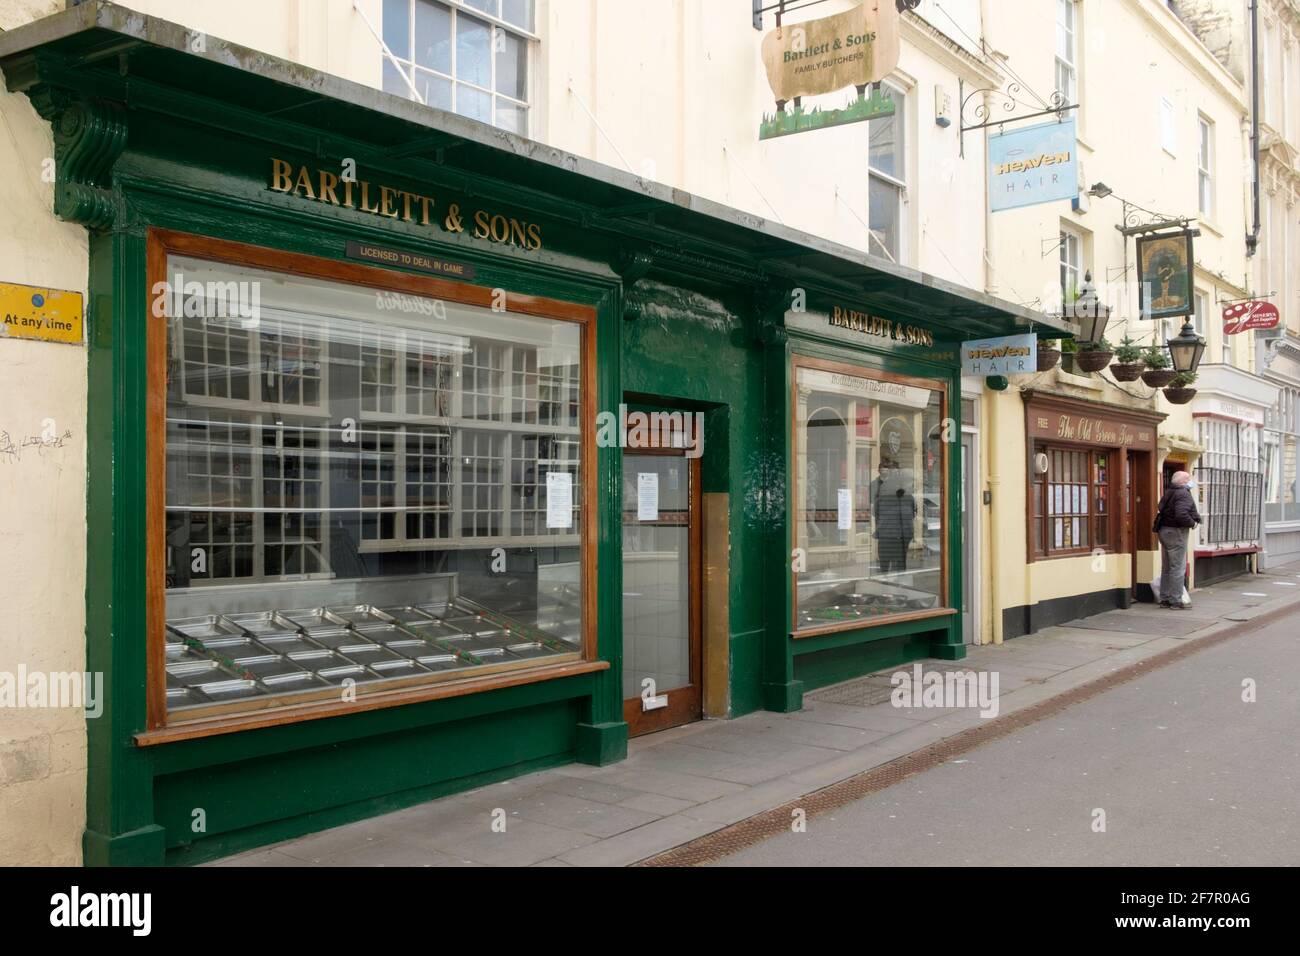 Fermeture des magasins de la ville de Bath somerset au Royaume-Uni. Ex Bartlett et fils Butchers sur Green St. Banque D'Images